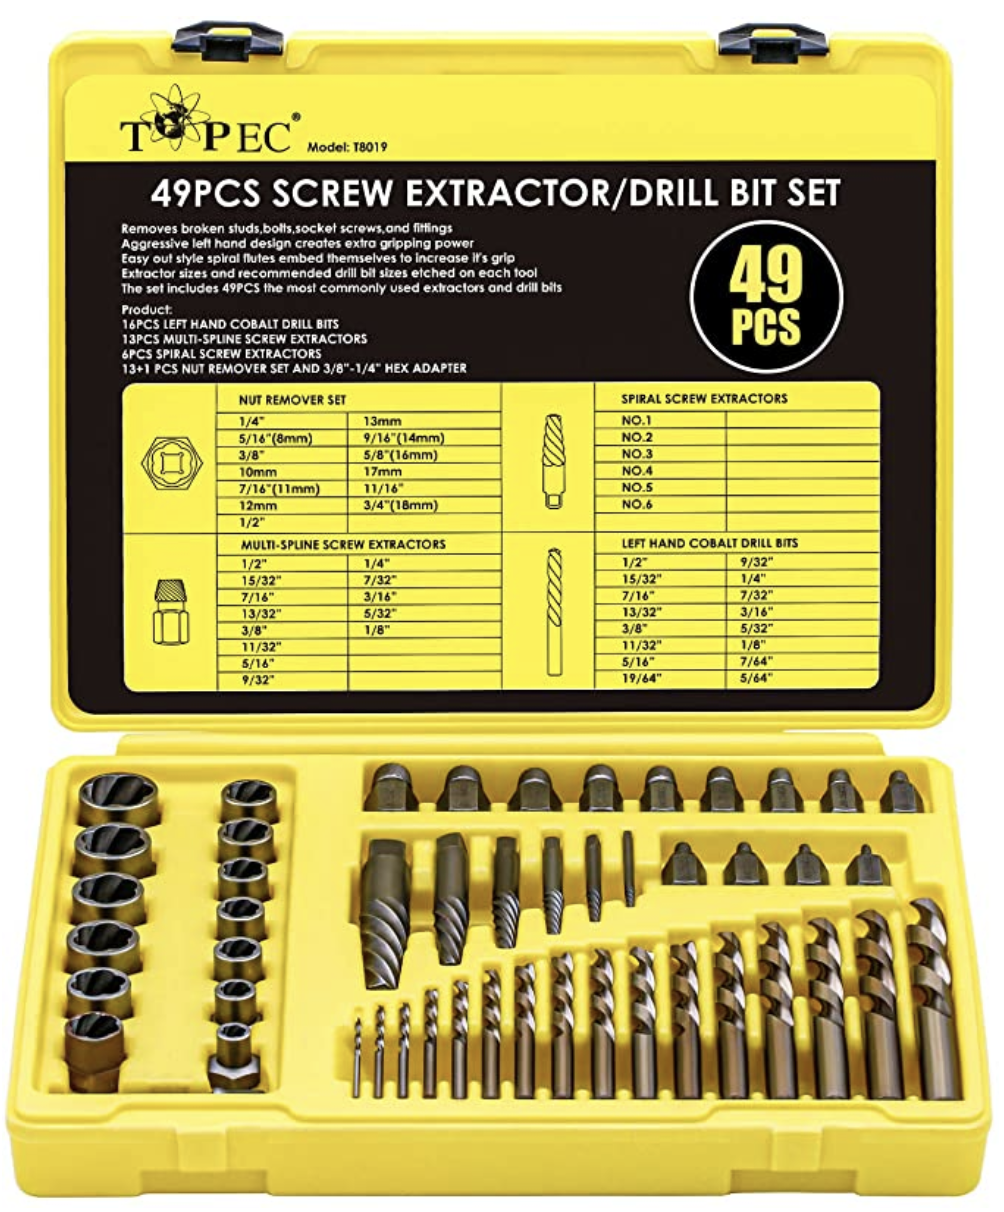 Topec 49pcs Screw Extractor/Drill Bit Set